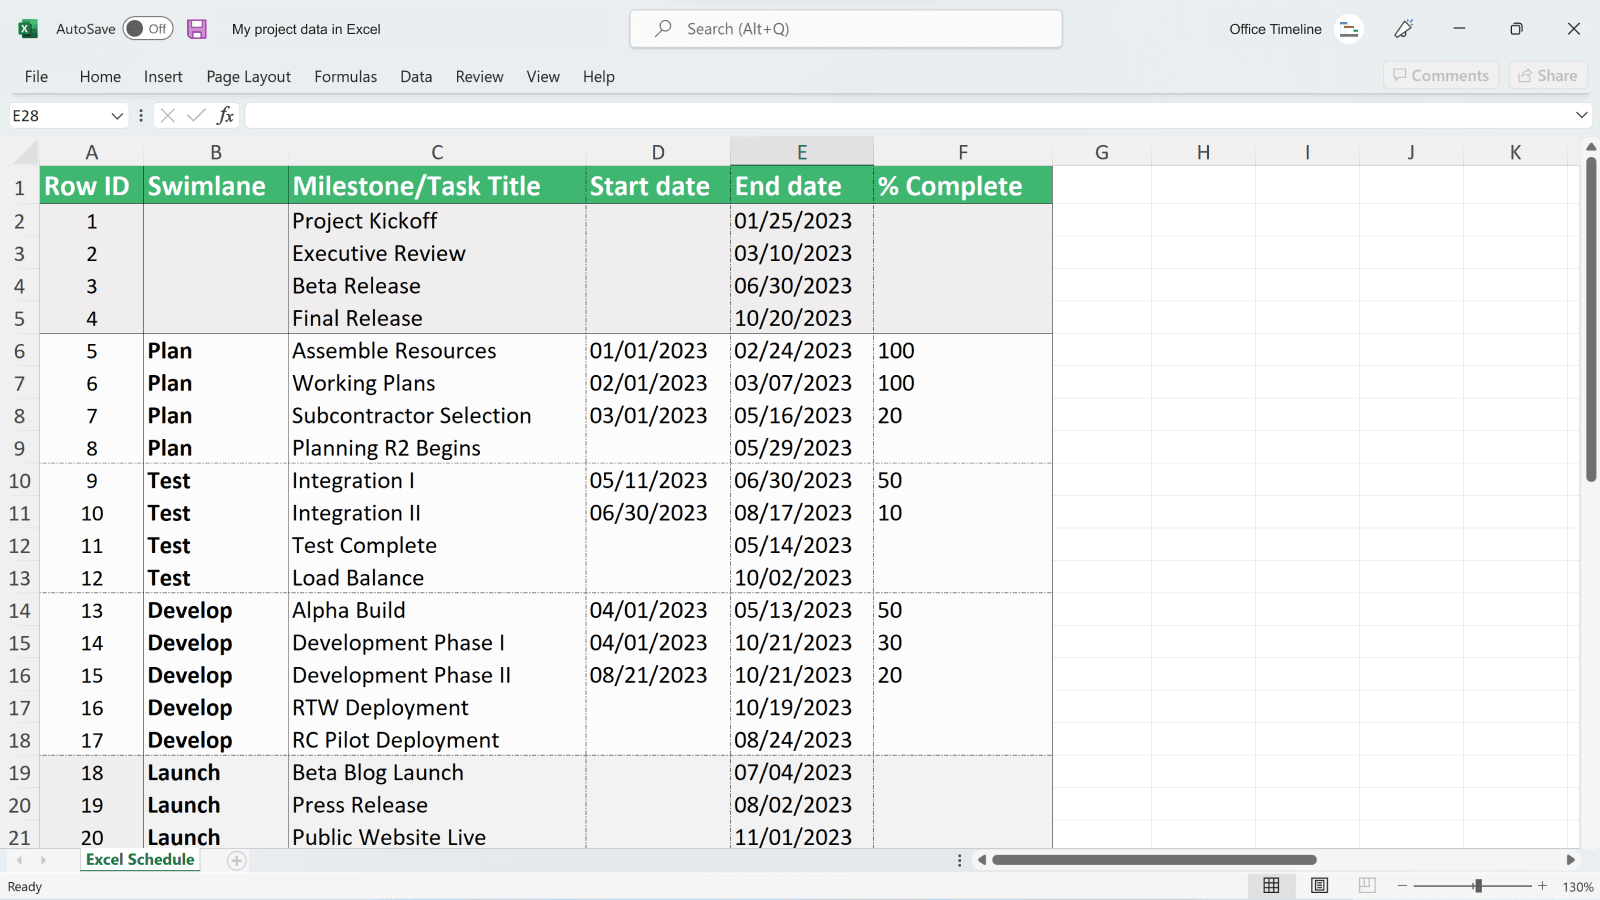 Données de projet dans Excel avant d'être importées dans Office Timeline Online